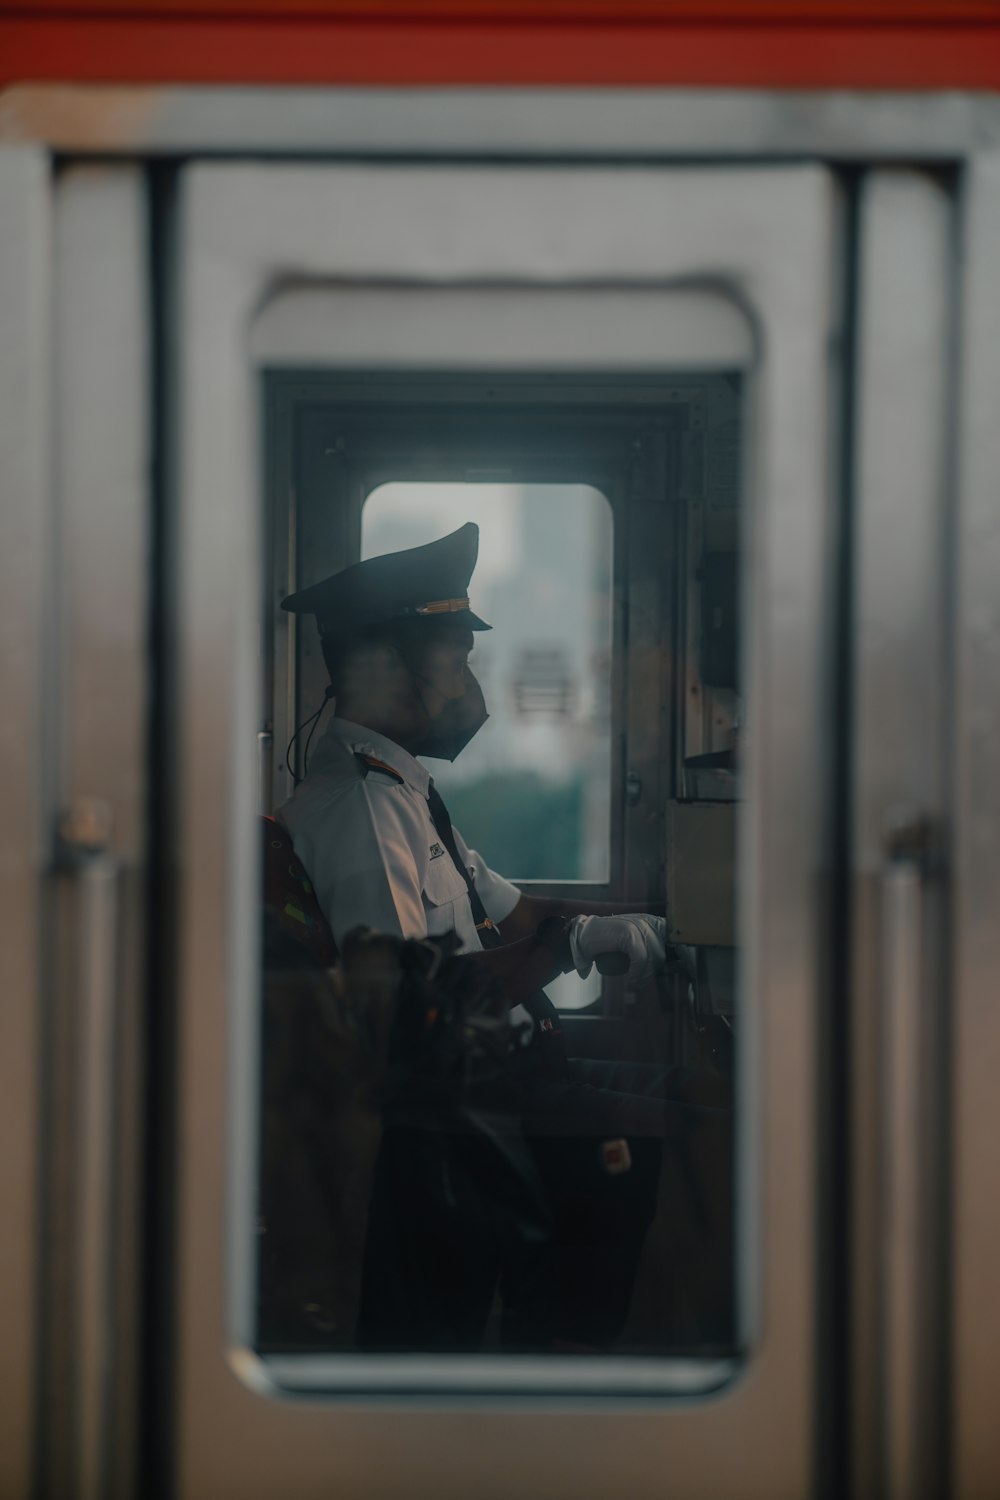 eine Person mit Hut und Mantel in einem Fenster